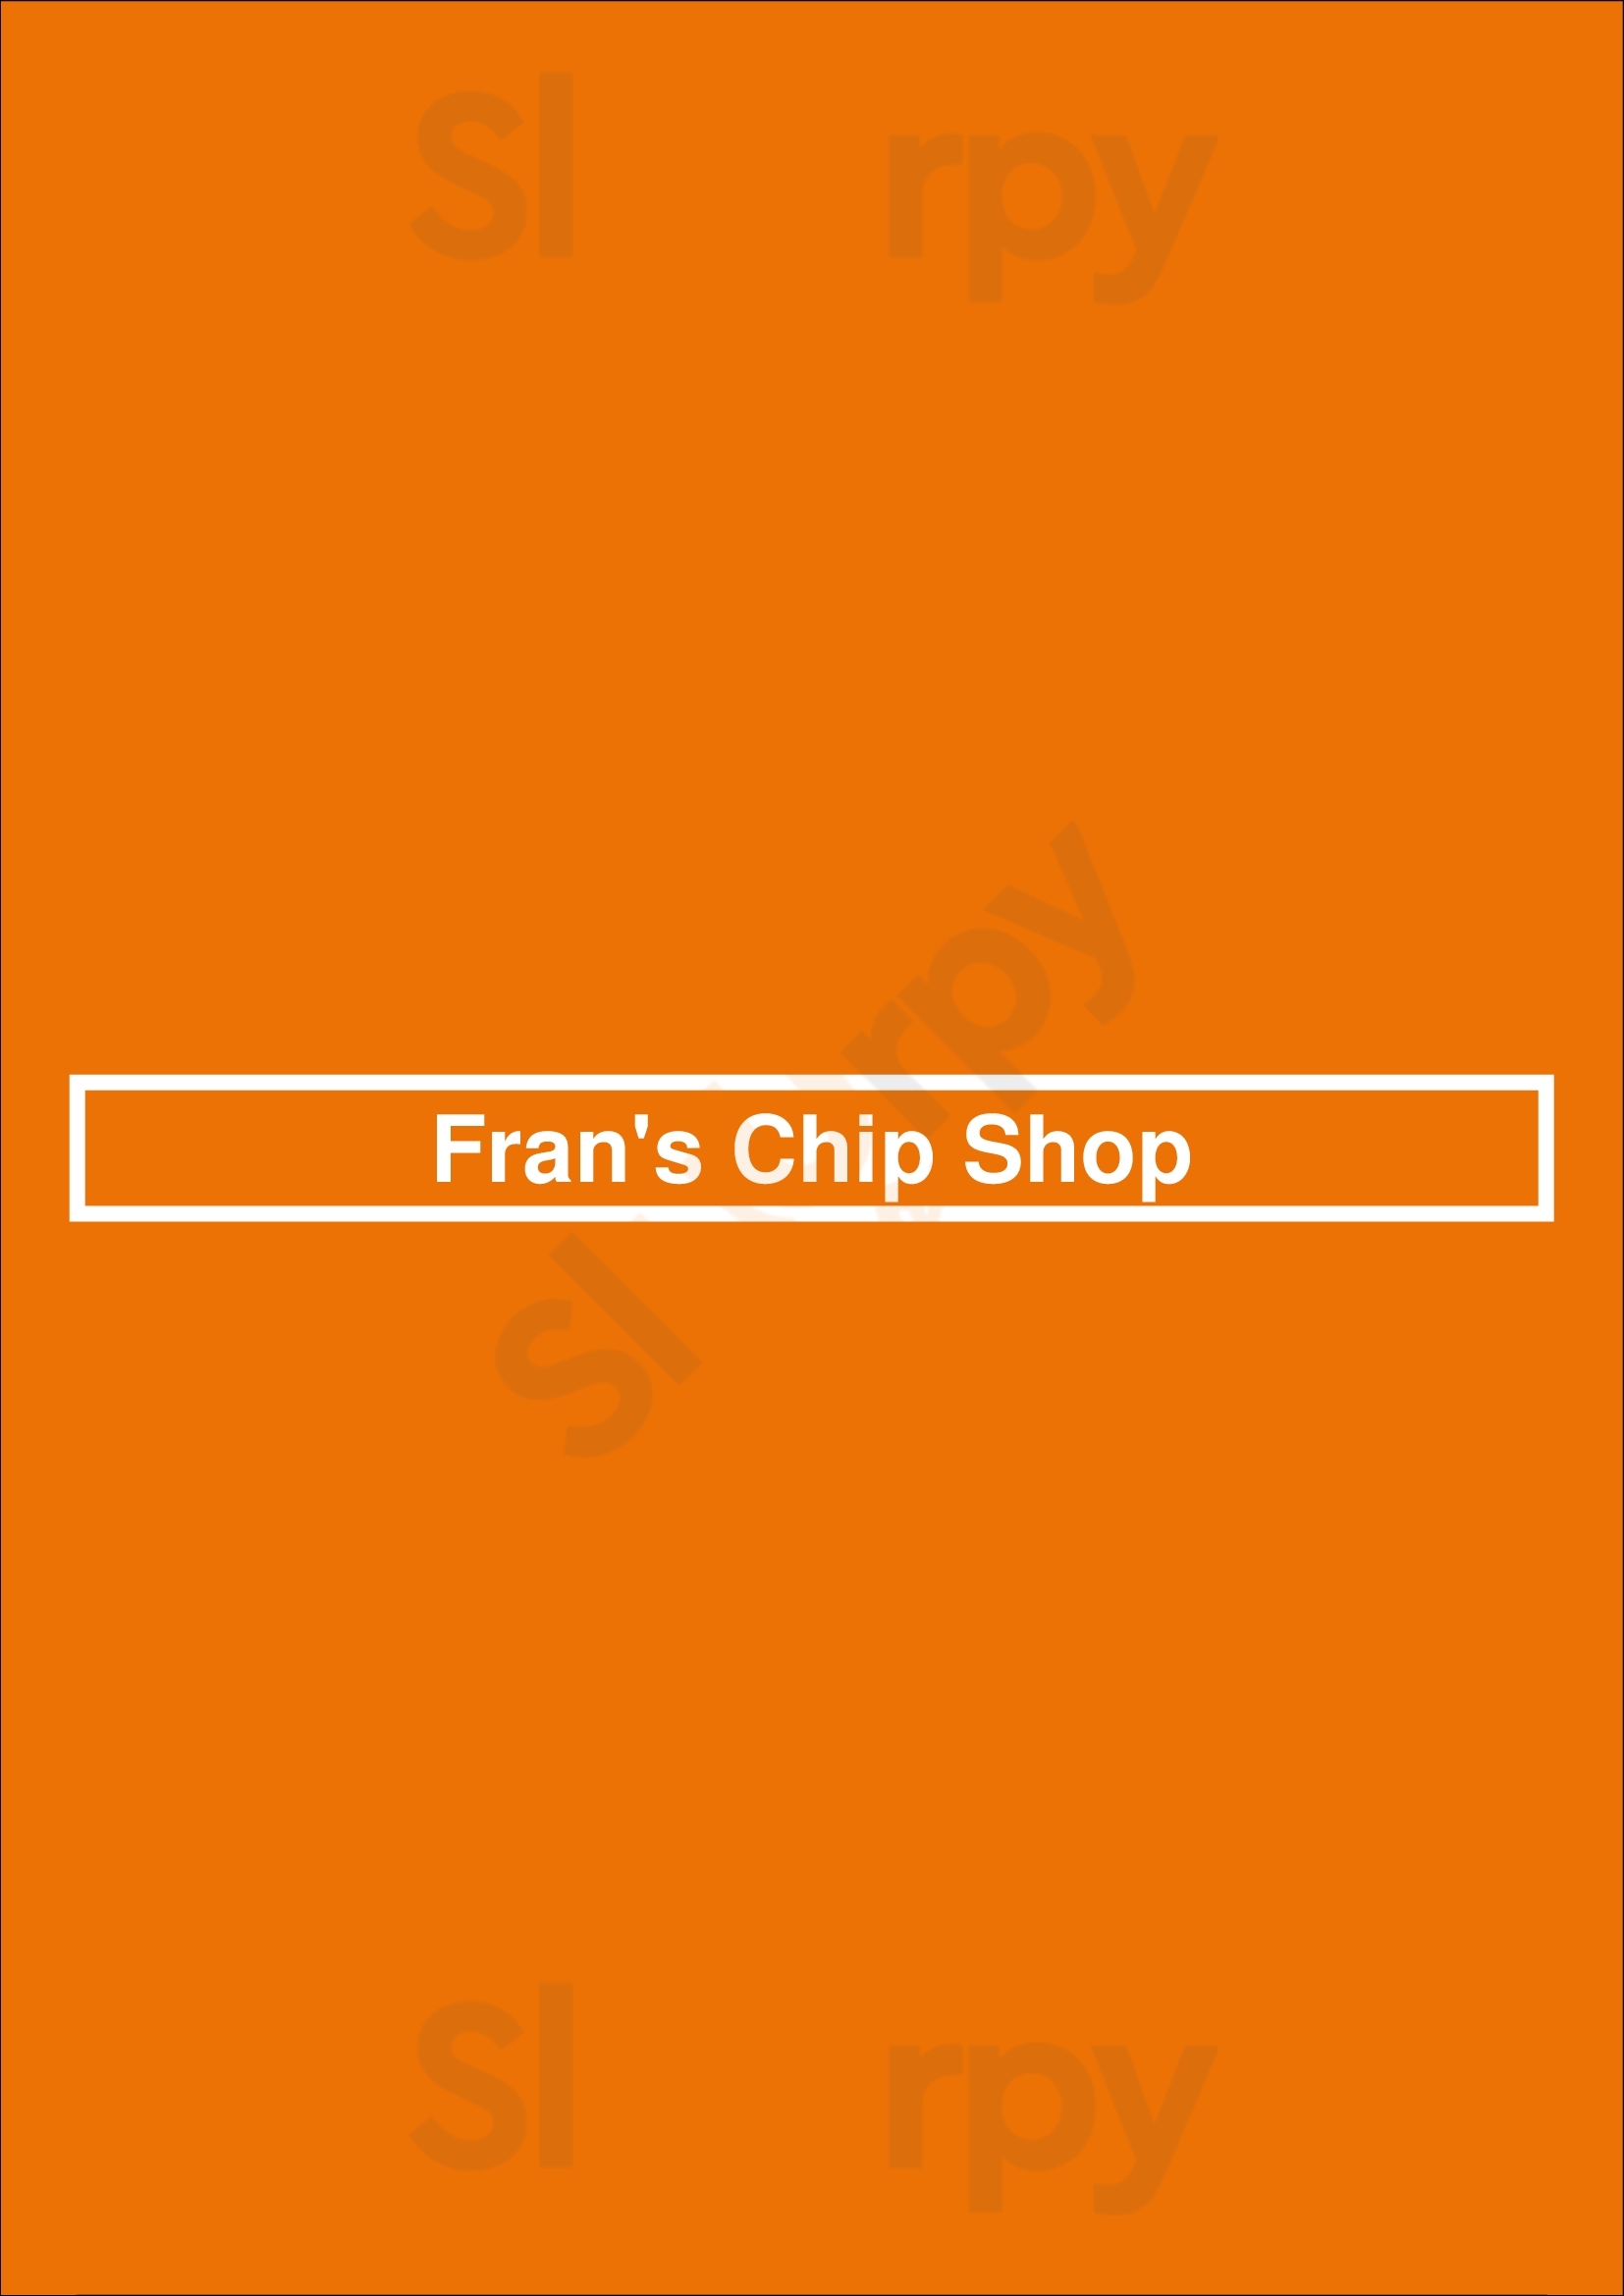 Fran's Chip Shop Kingston Menu - 1